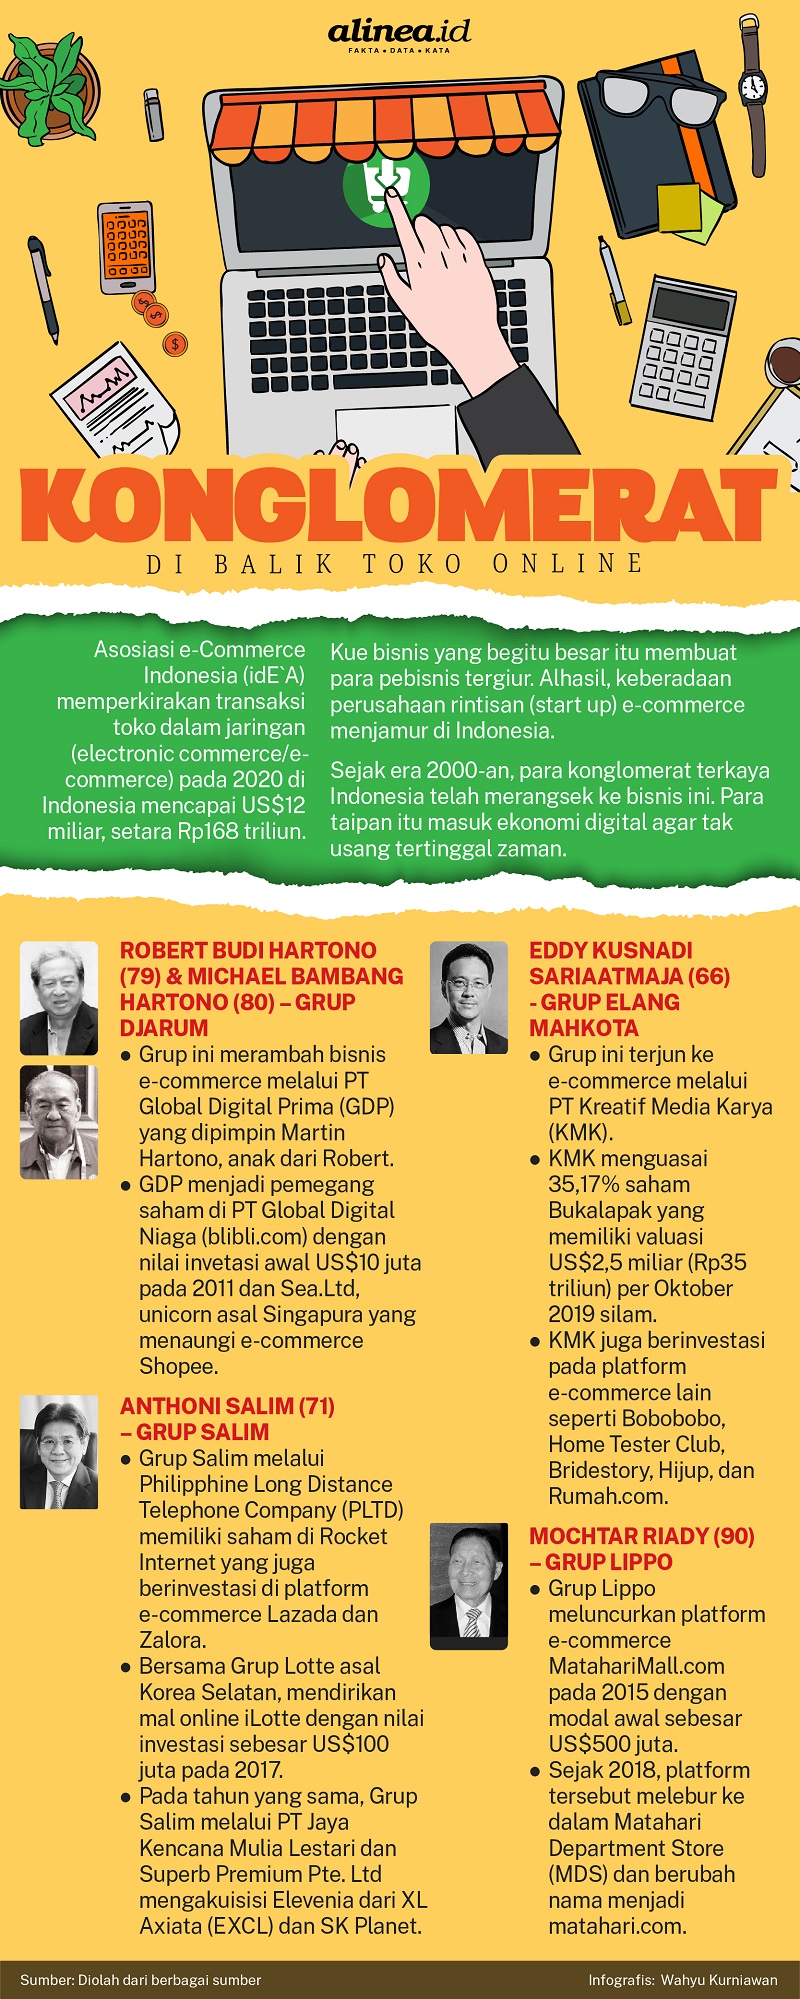 Infografik para konglomerat di balik toko online. Alinea.id/Wahyu Kurniaan